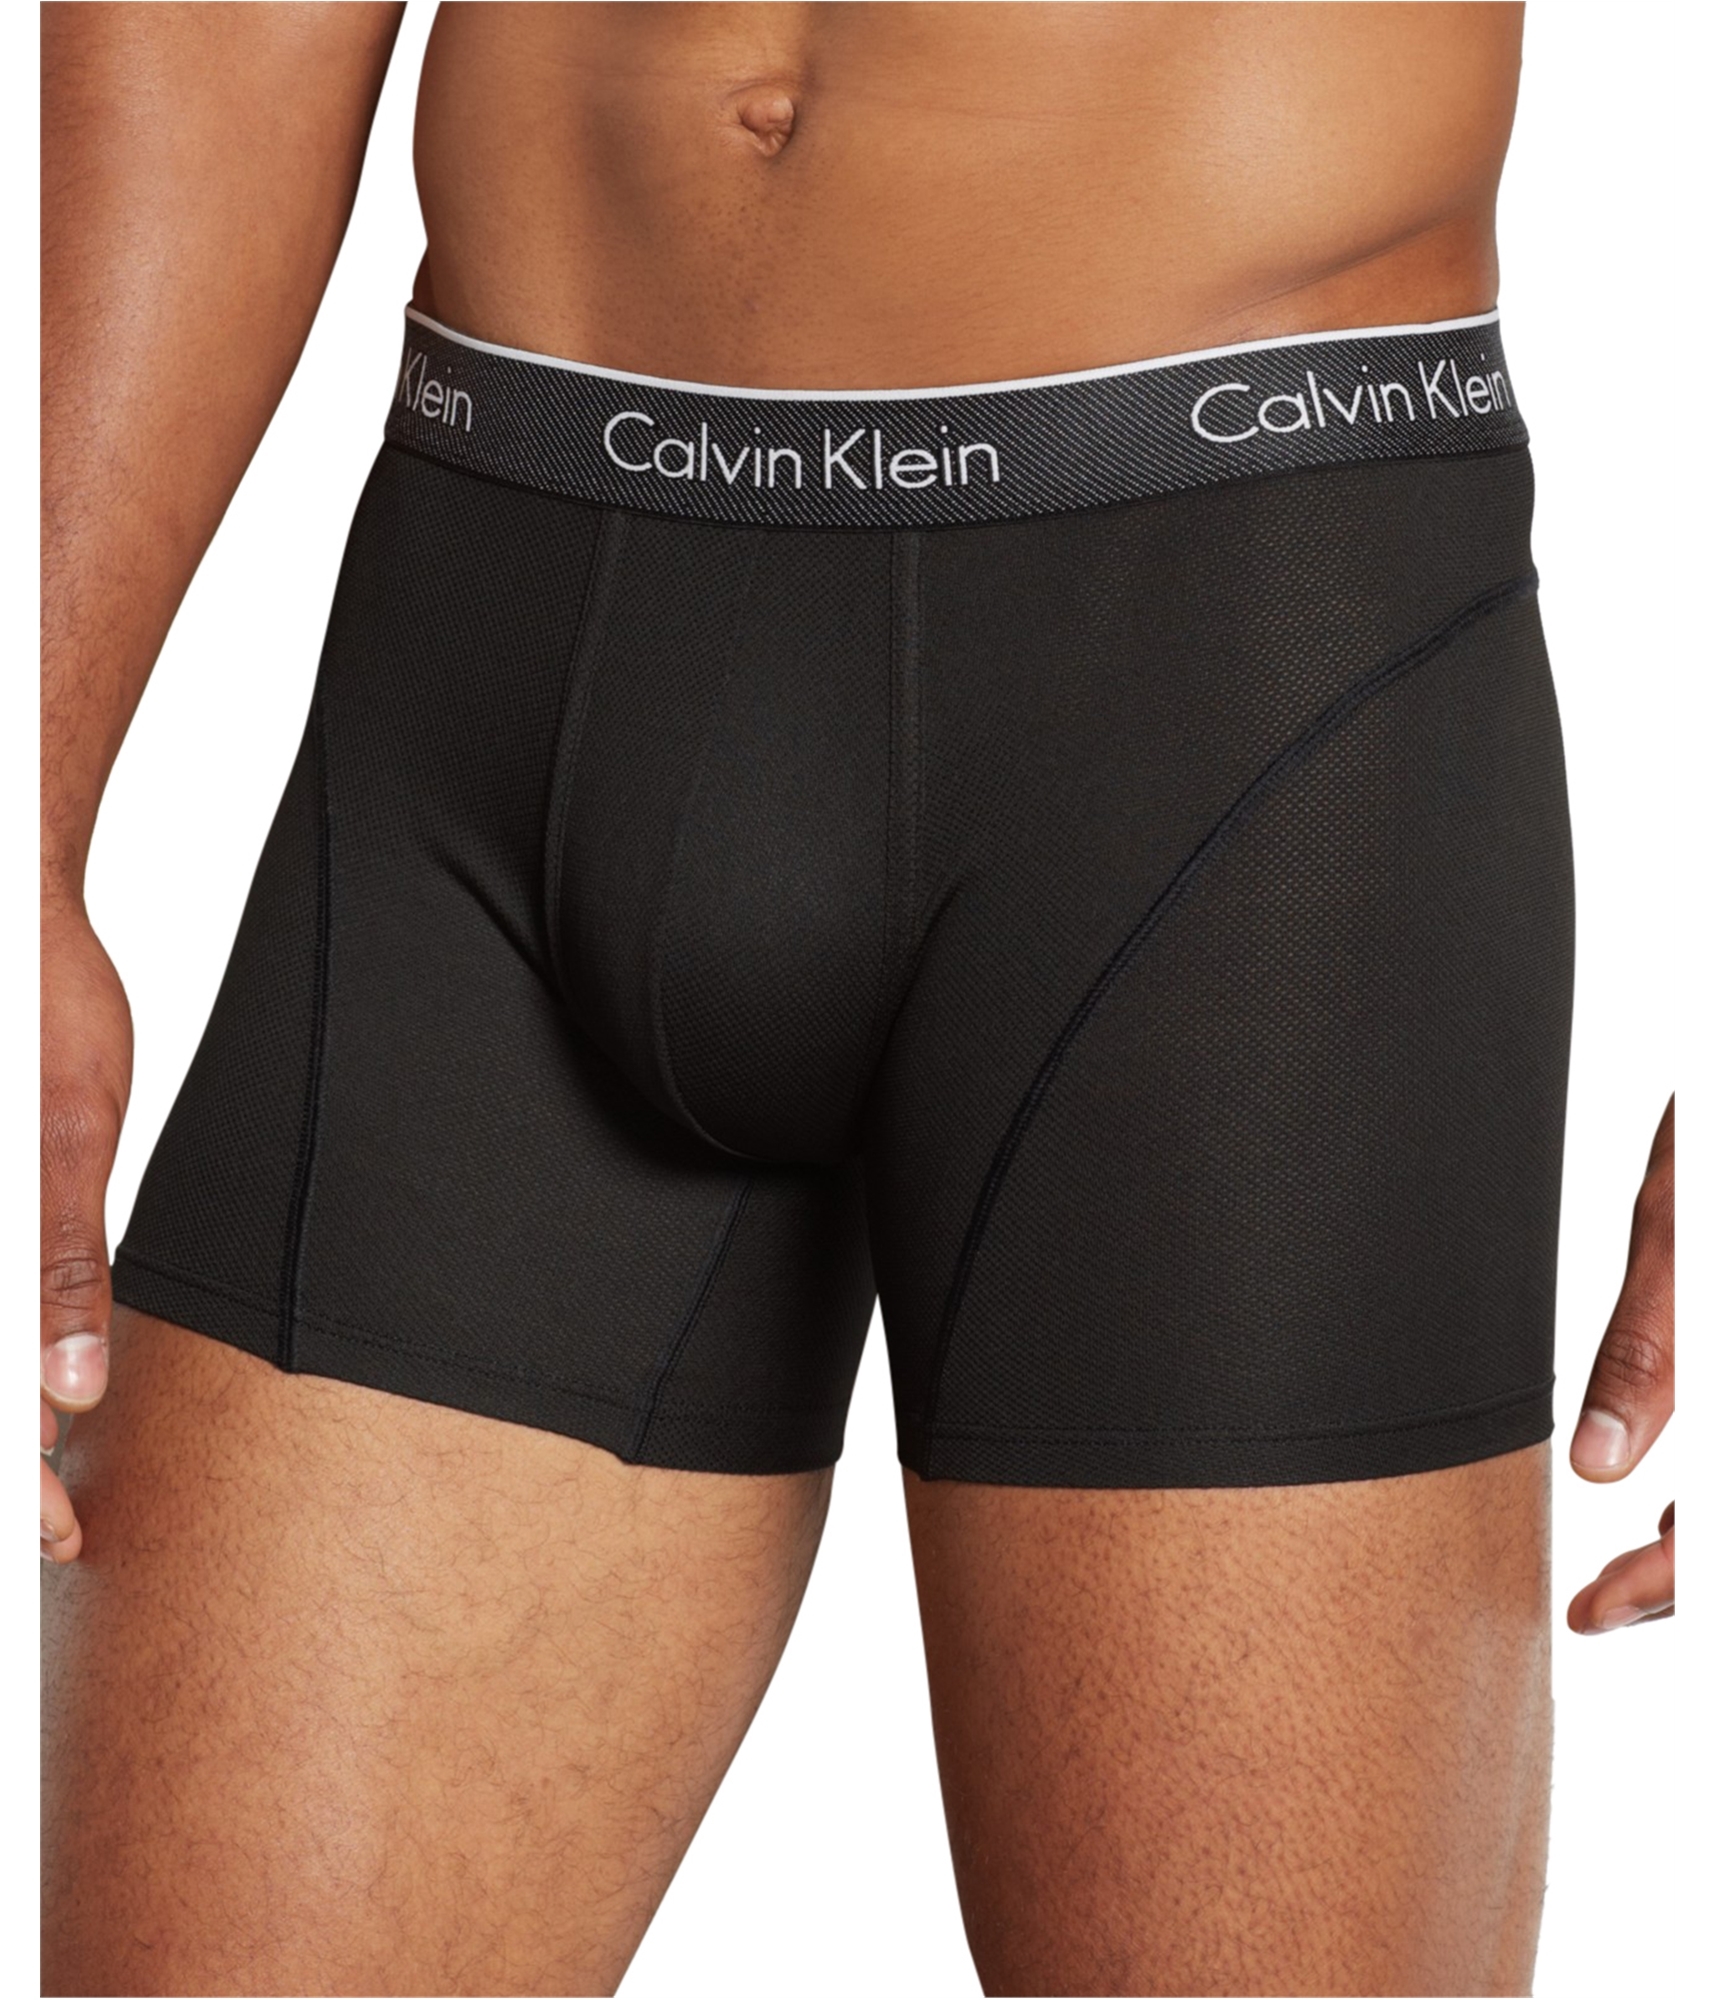 Buy a Mens Calvin Klein Fx Low Rise Underwear Boxer Briefs Online |  